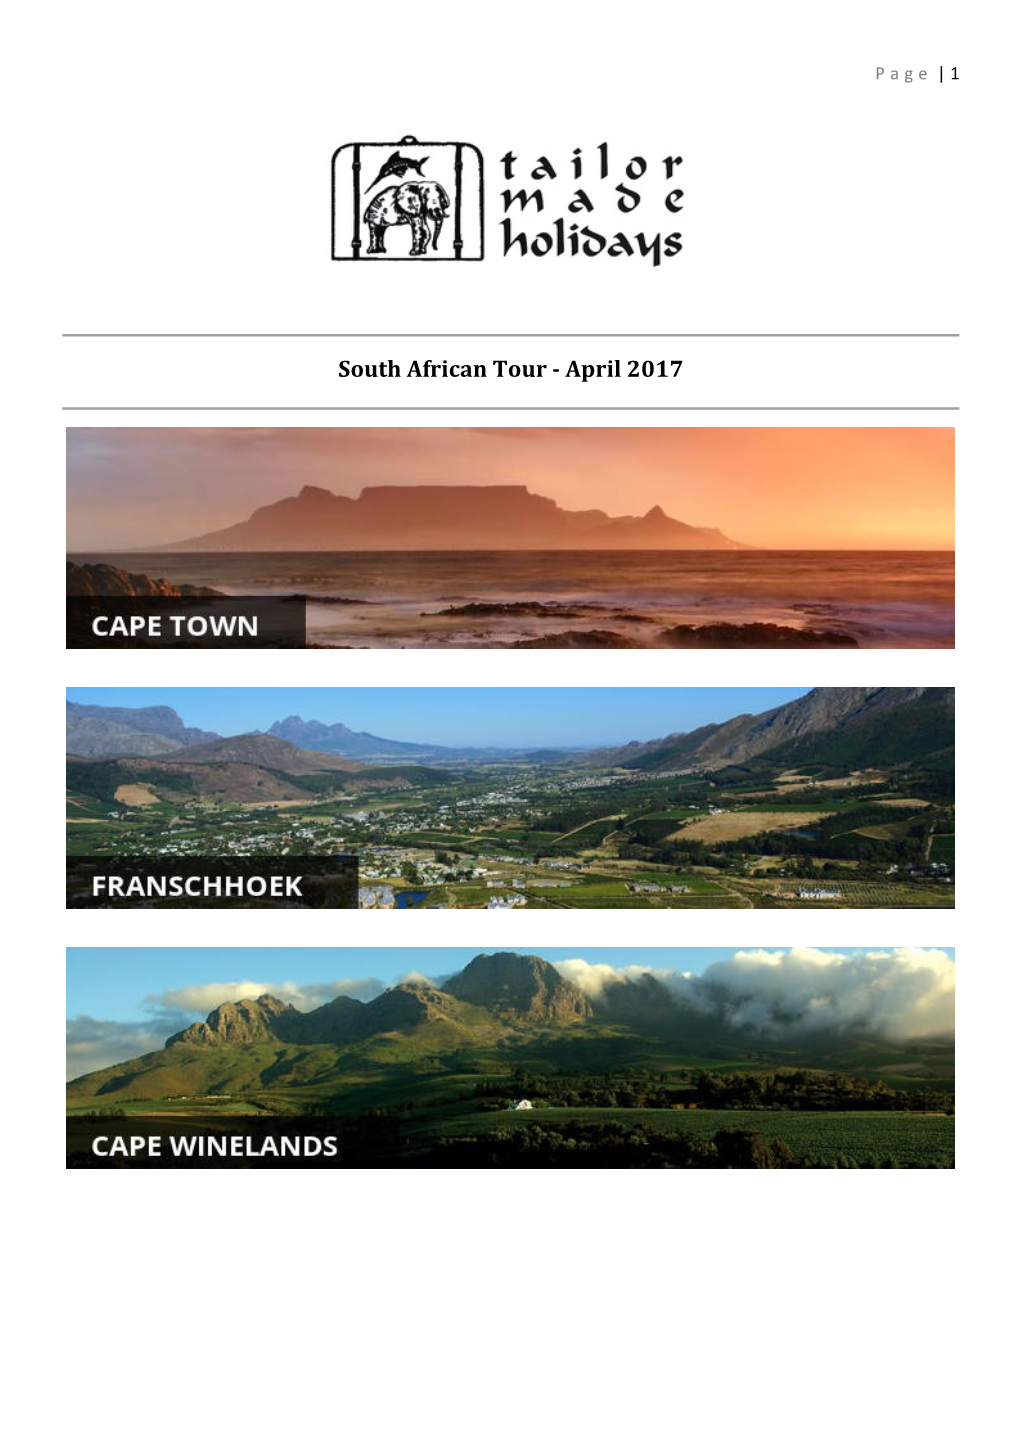 South African Tour - April 2017